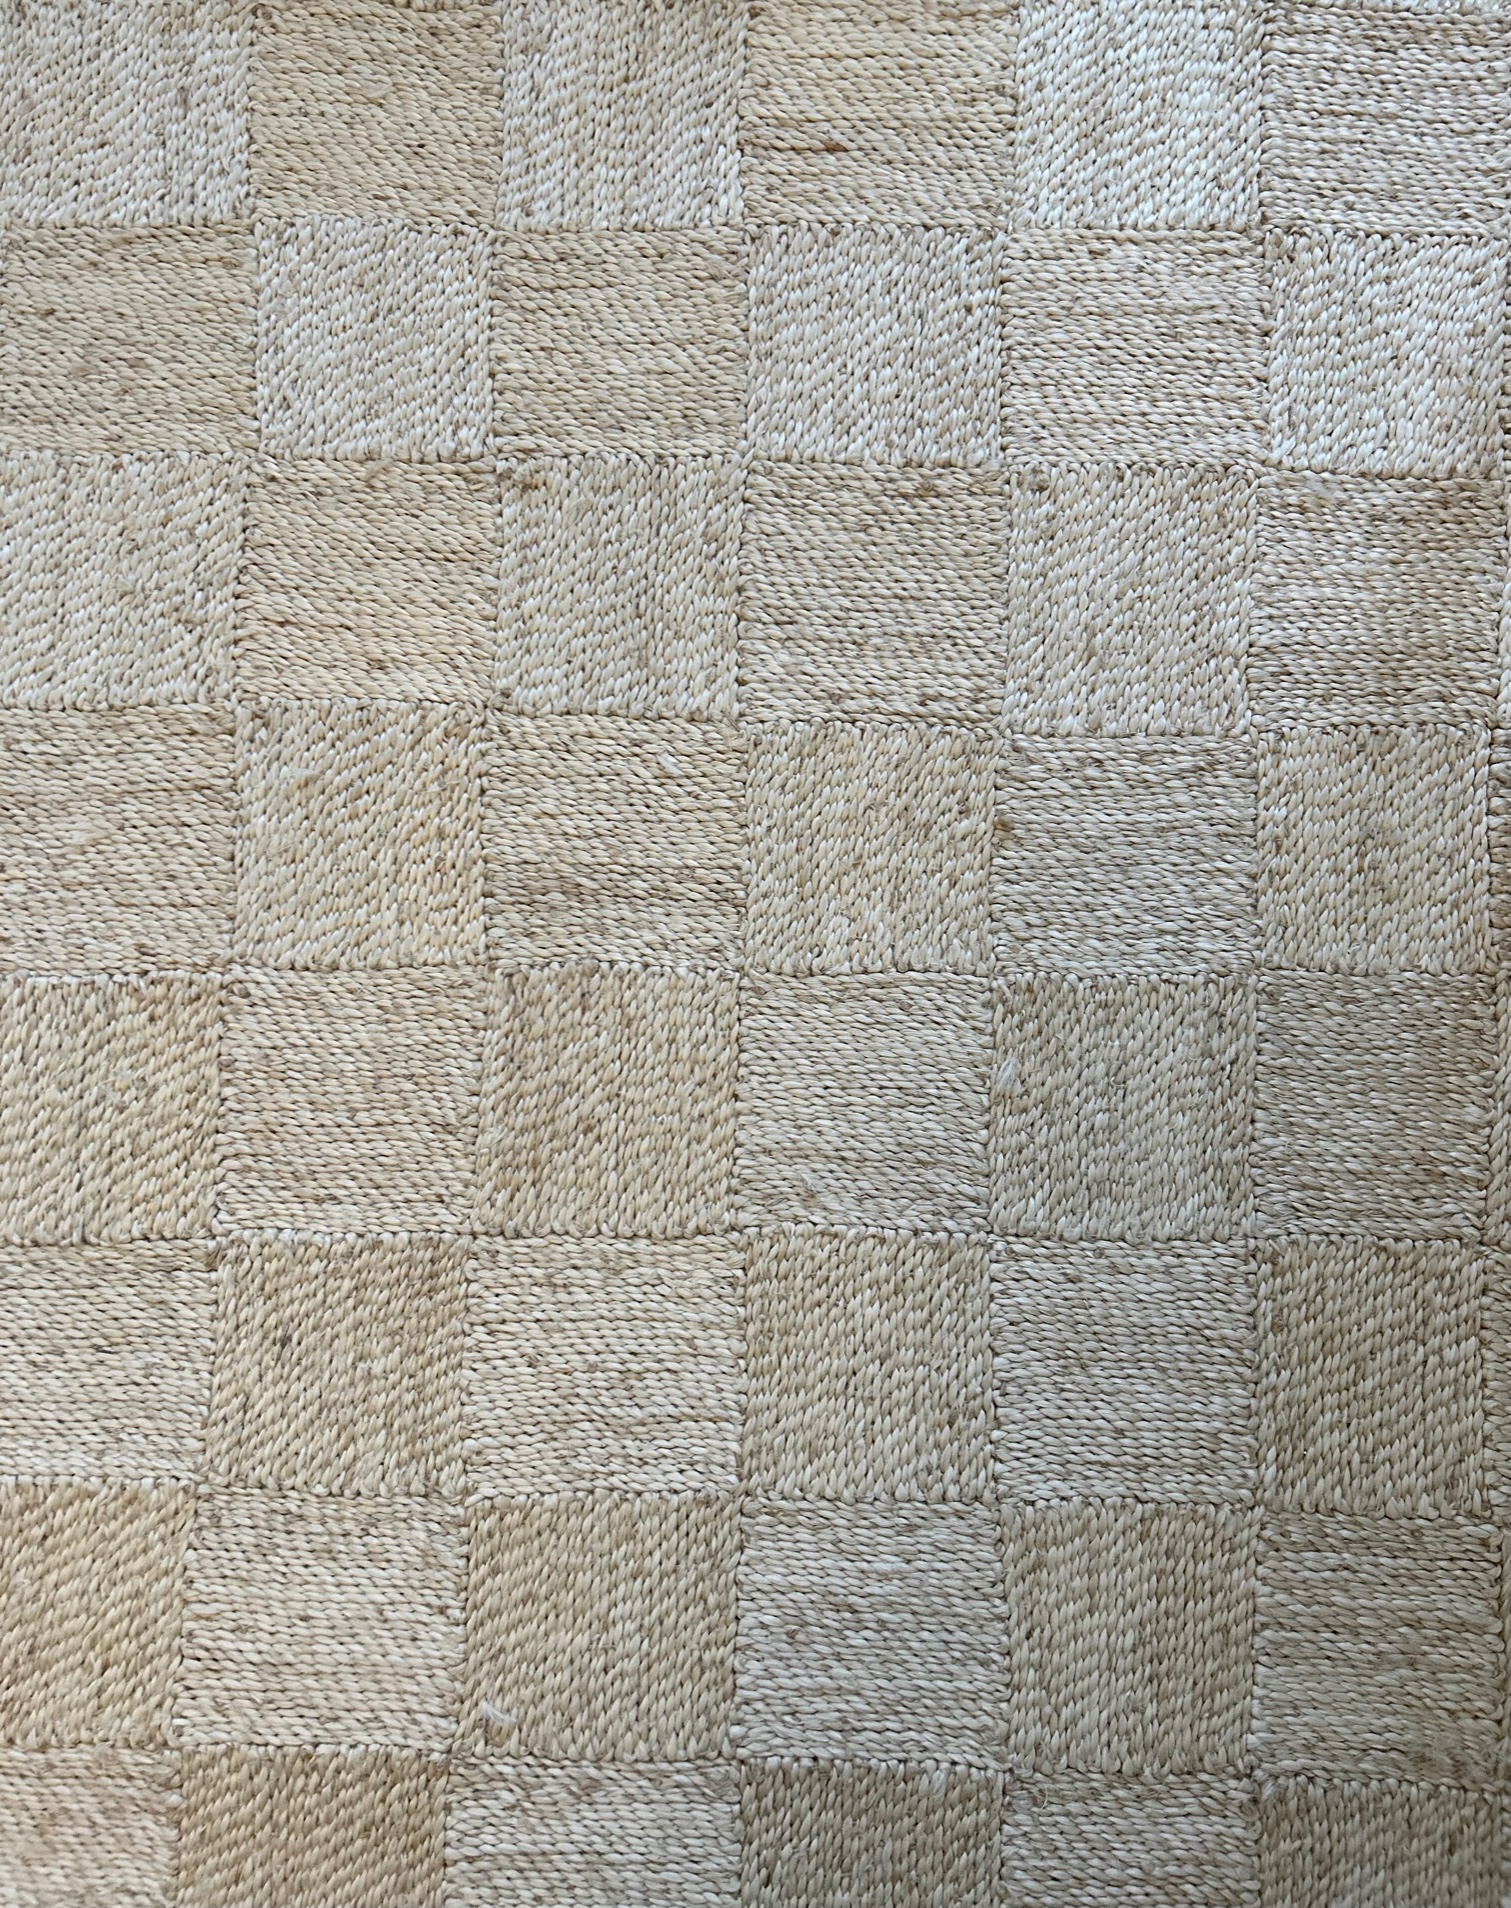 Maison Bengal Checkered Jute Floor Mat